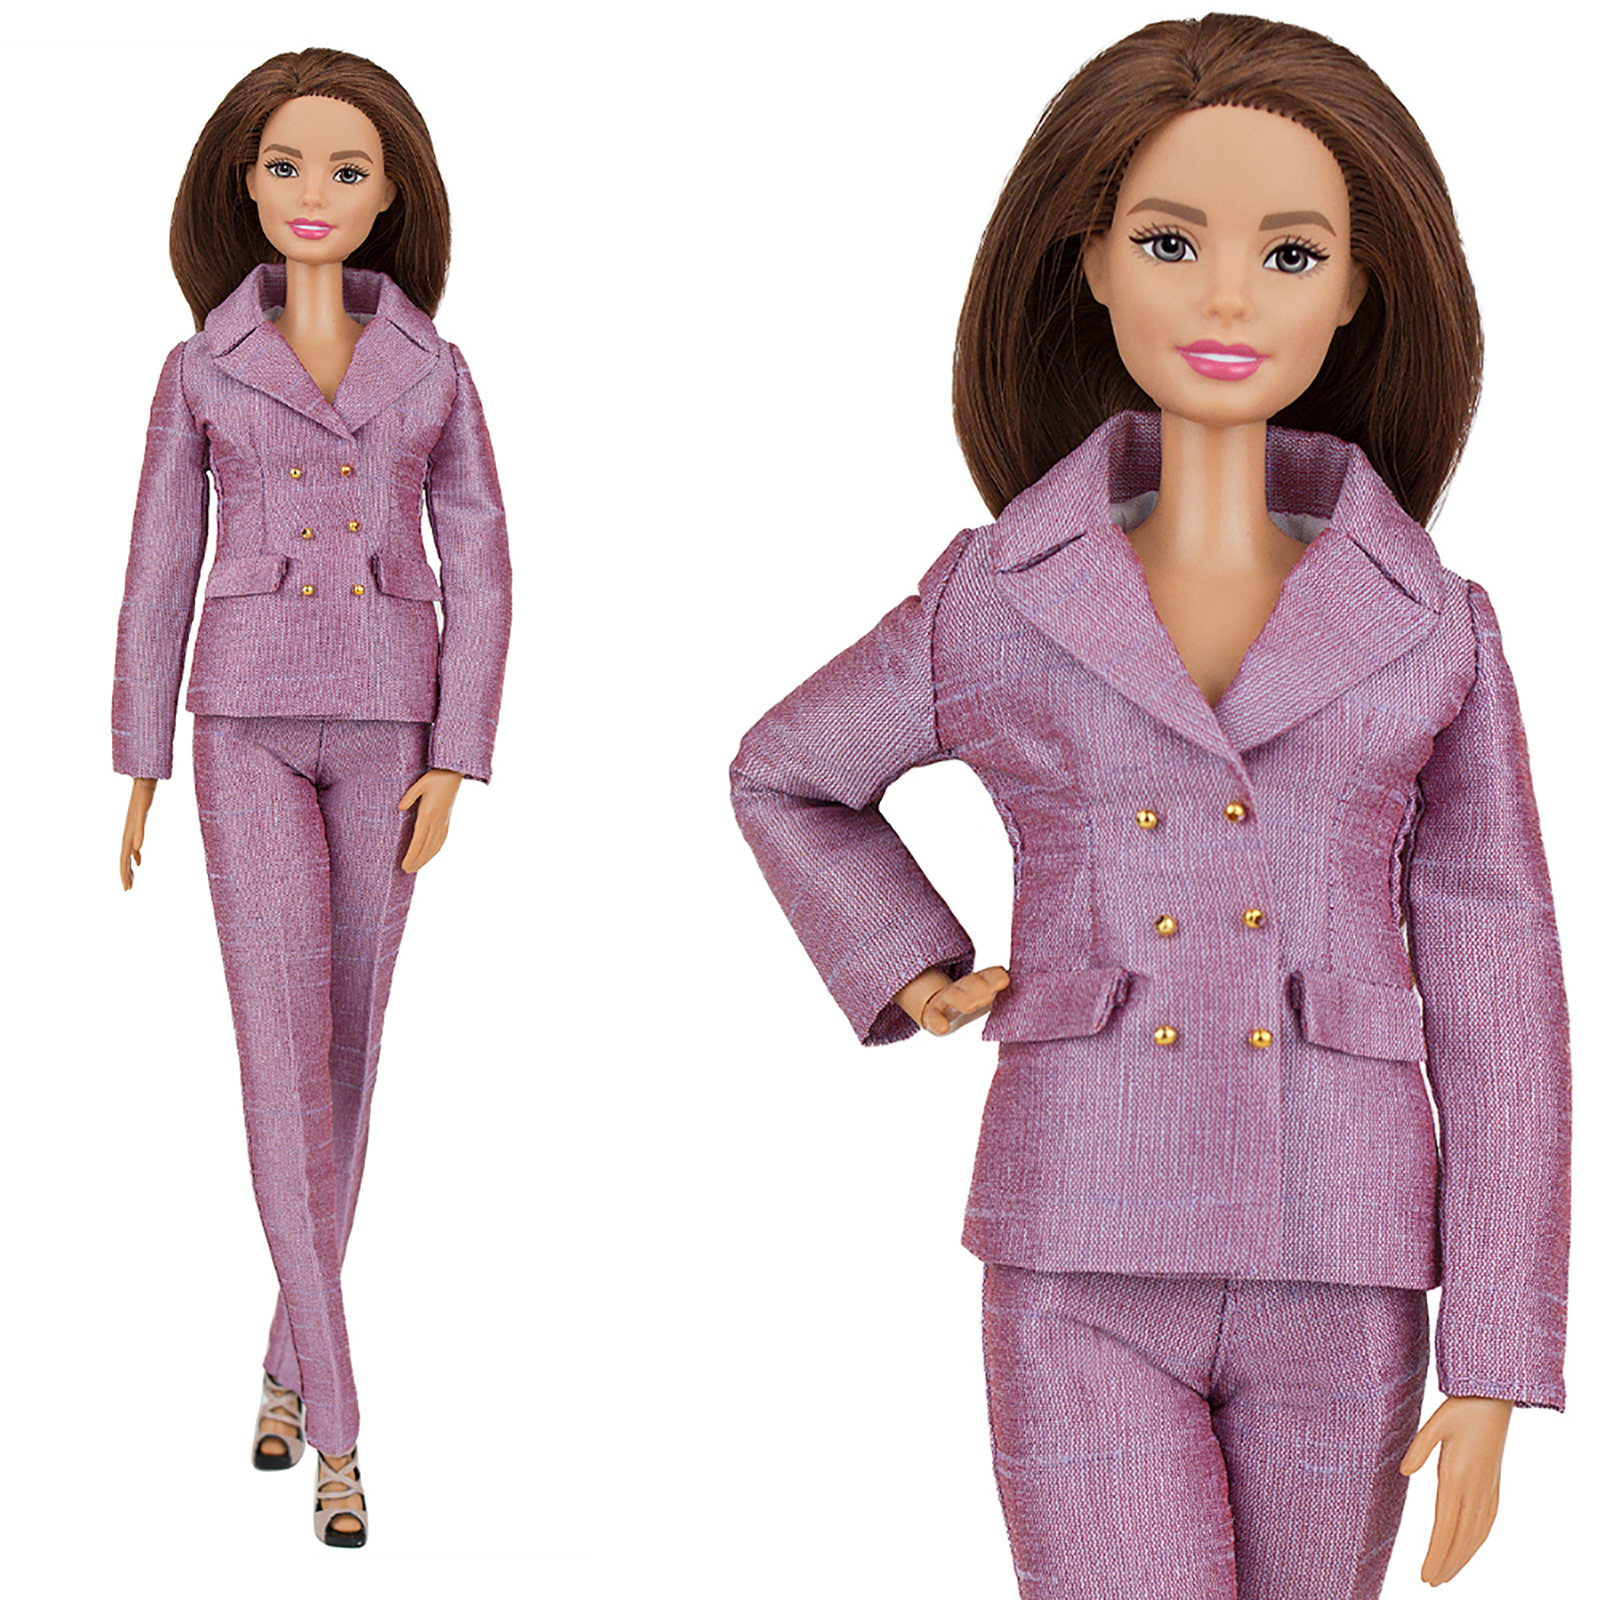 Шелковый брючный костюм Эленприв Лилово-розовый для куклы 29 см типа Барби FA-011-14 - фото 3